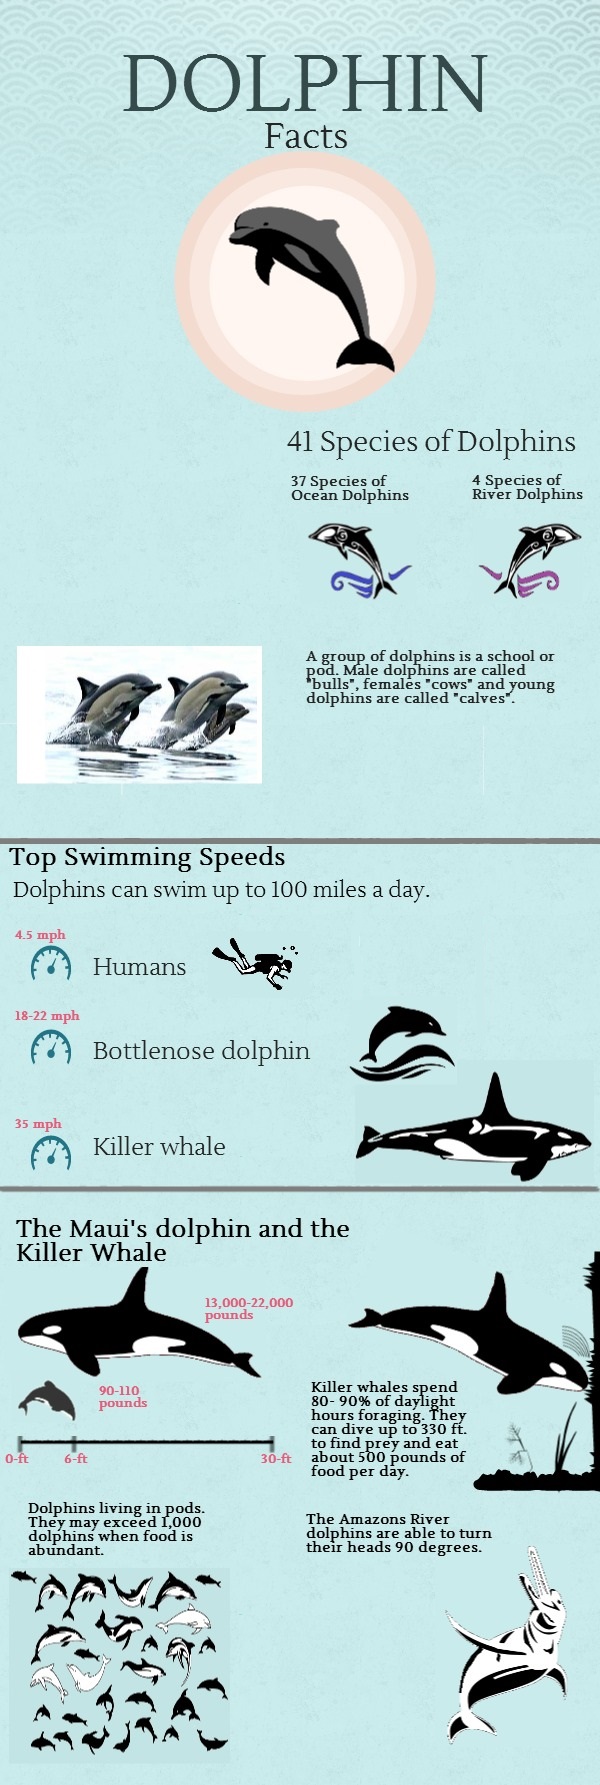 dolphin-facts_5249a9adea1ba